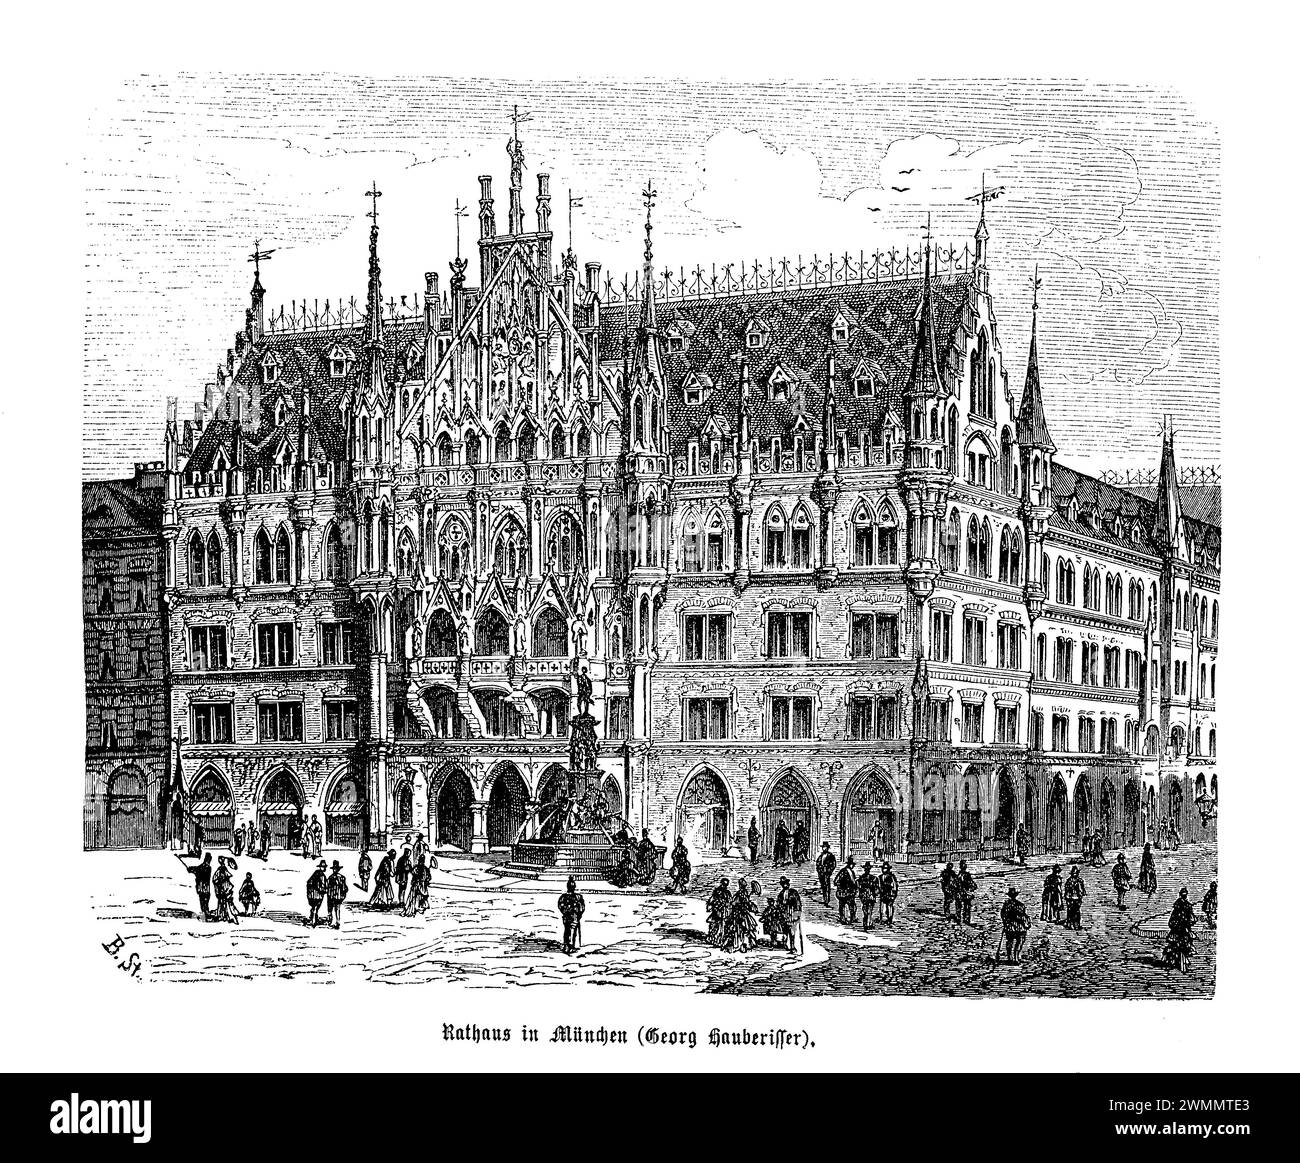 El nuevo ayuntamiento (Neues Rathaus) de Munich, una obra maestra de la arquitectura gótica del renacimiento, fue diseñado por el arquitecto Georg von Hauberisser. Antes de la ampliación de 1898, el edificio ya era un testimonio de la ambición y grandeza arquitectónica de Munich. Completado en su fase inicial en 1874, el nuevo ayuntamiento fue un punto focal de orgullo cívico, mostrando fachadas intrincadas adornadas con estatuas, gárgolas y agujas que llegan hacia el cielo, encarnando la rica historia de la ciudad y la identidad cultural. Foto de stock